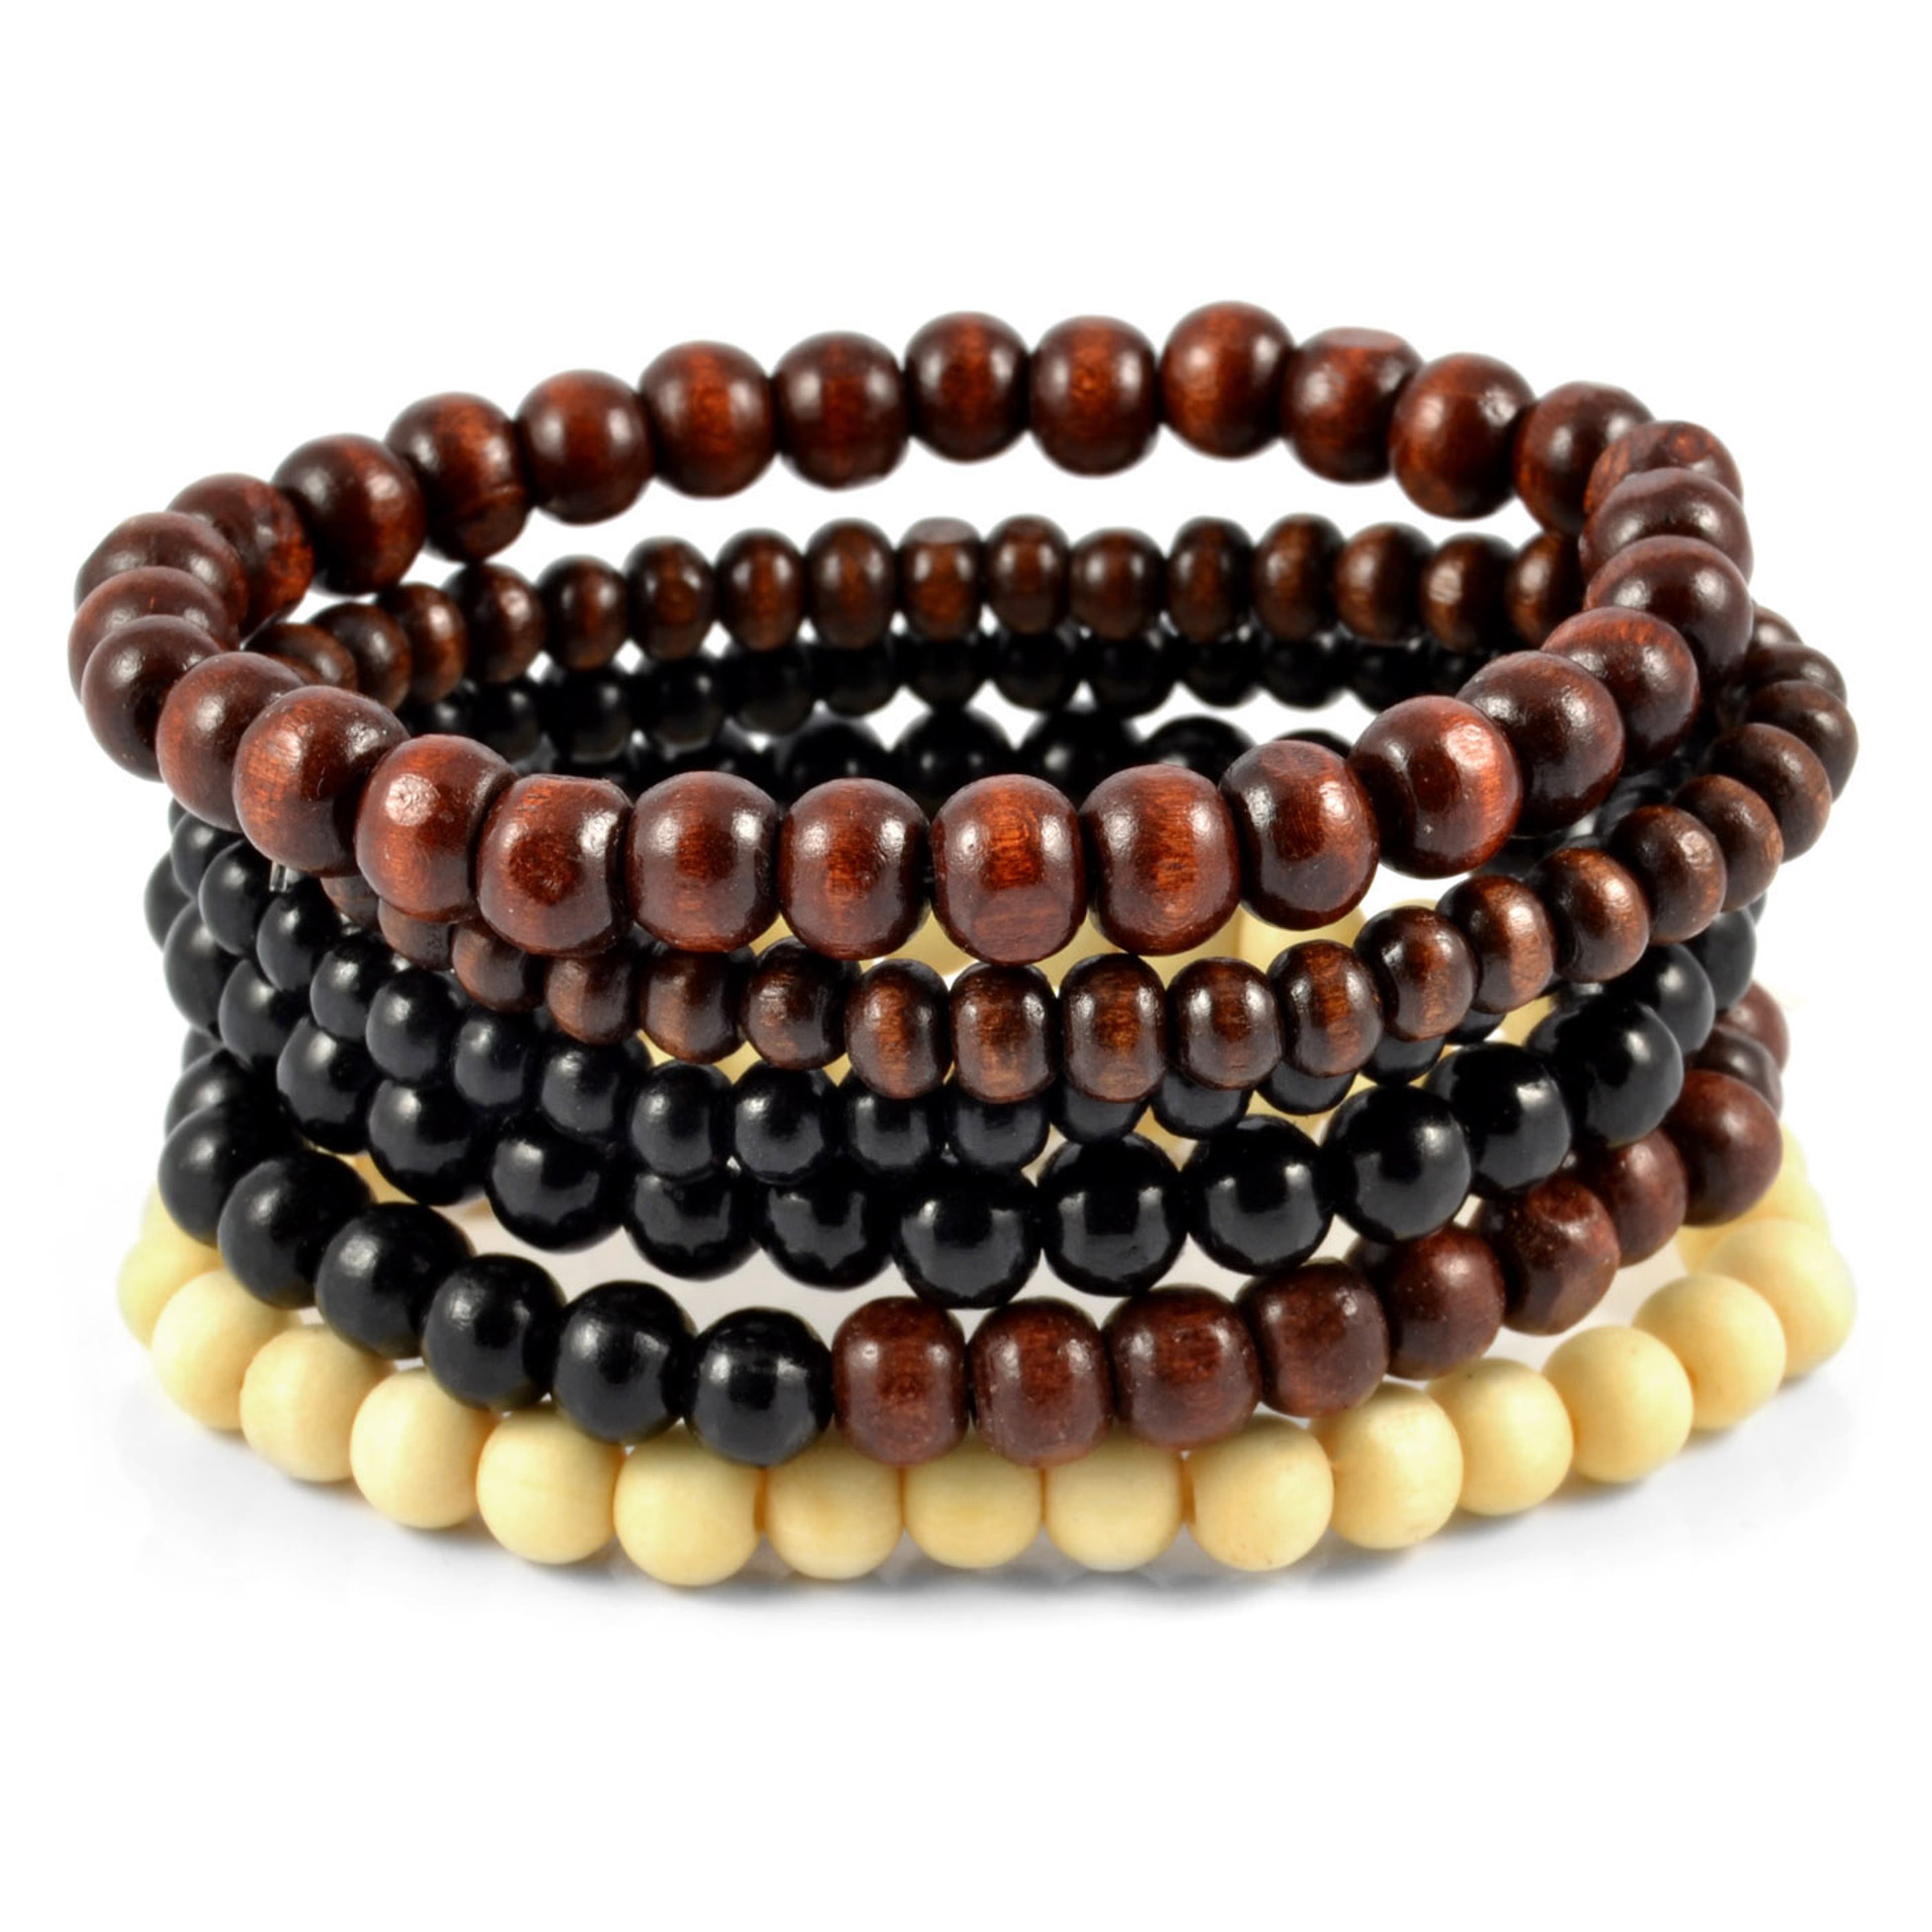 Black, Brown & Cream Natural Wooden Bracelet Set